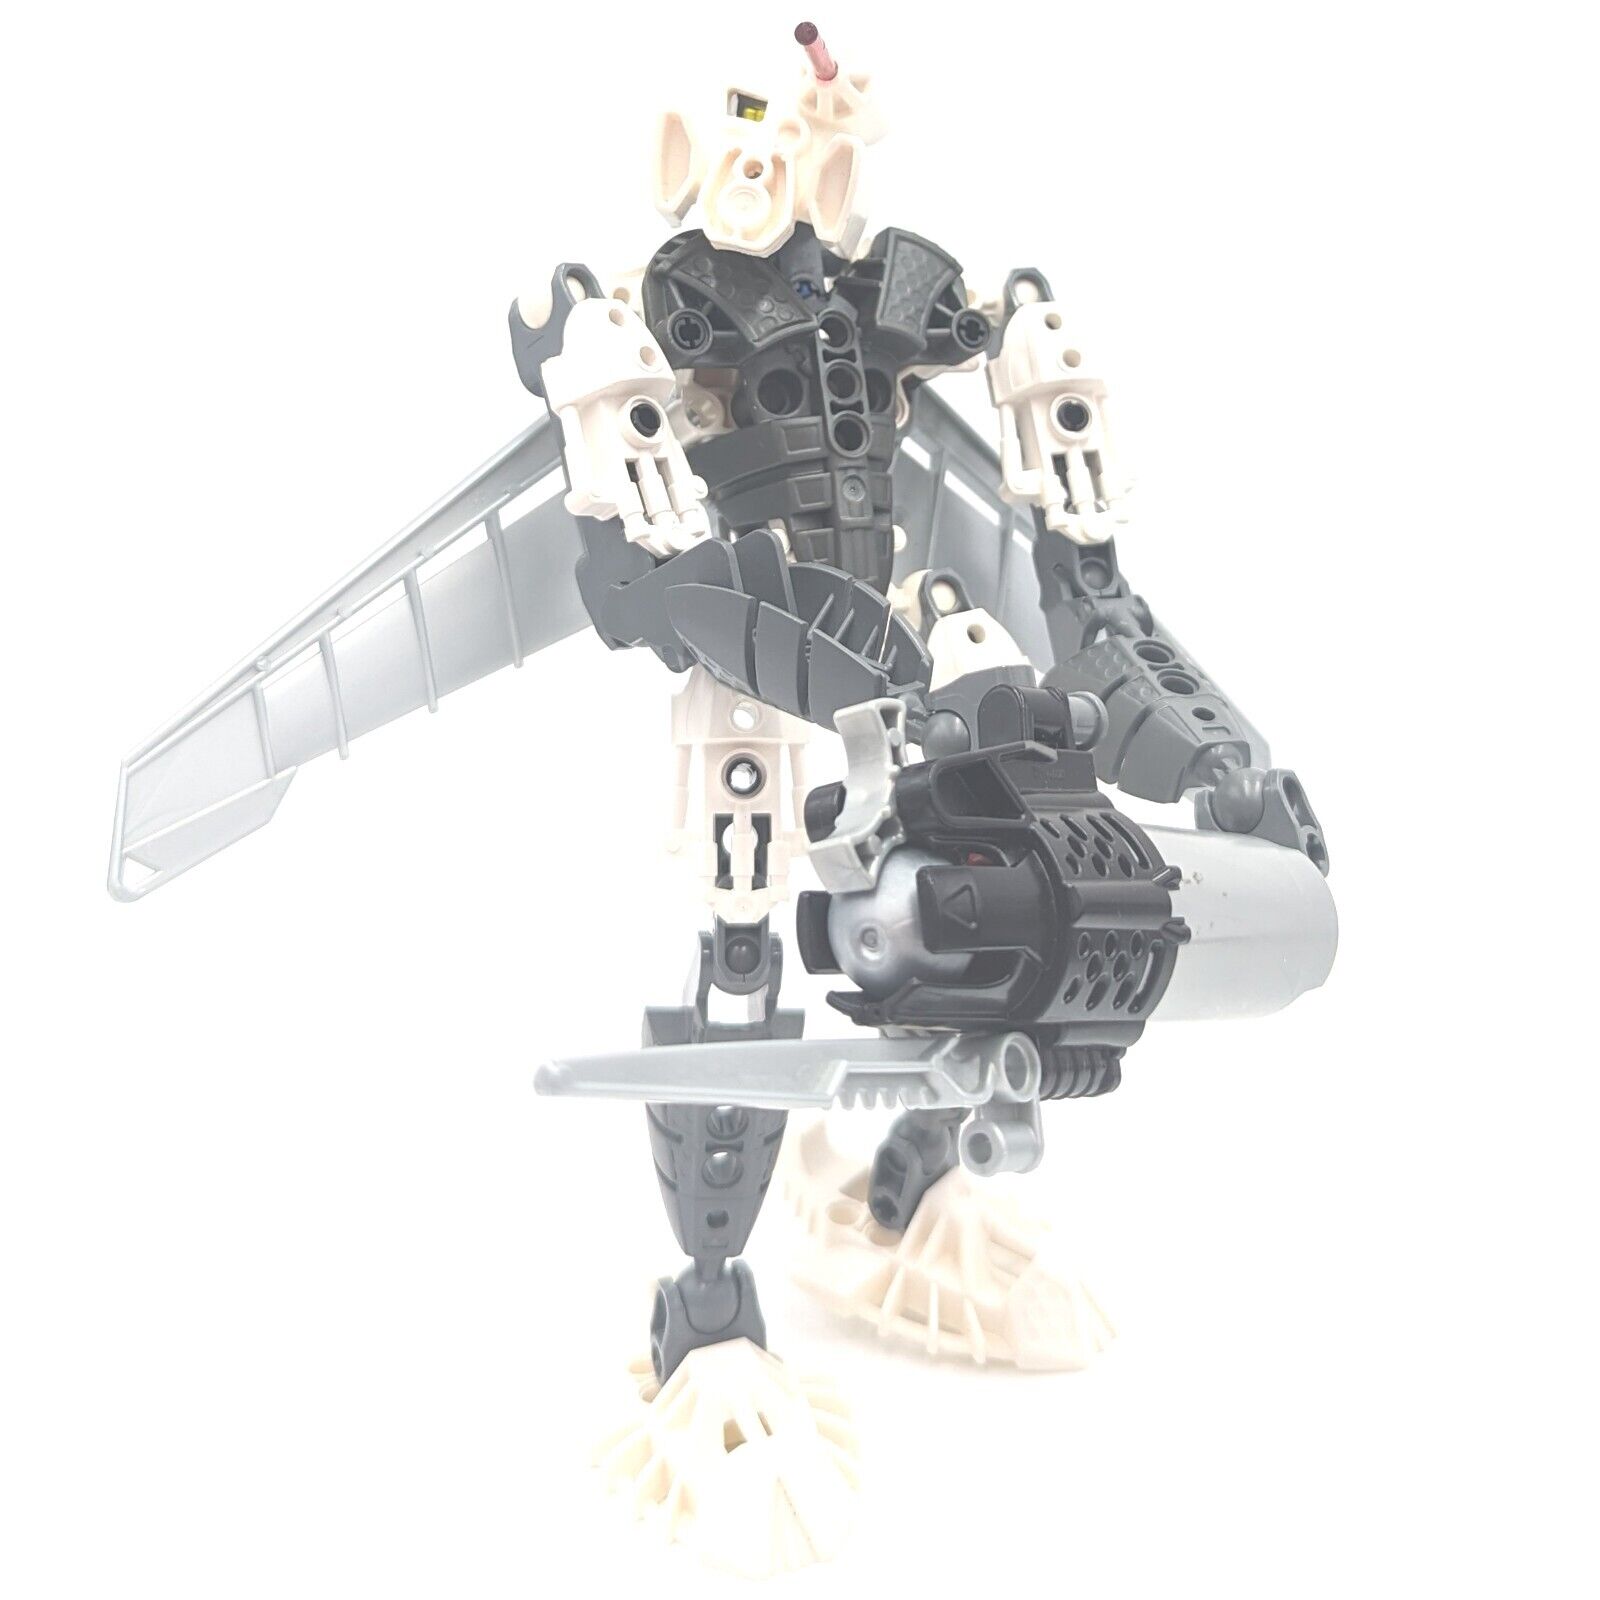 LEGO Bionicle Phantoka : Toa Kopaka 8685 (1 Zamor)